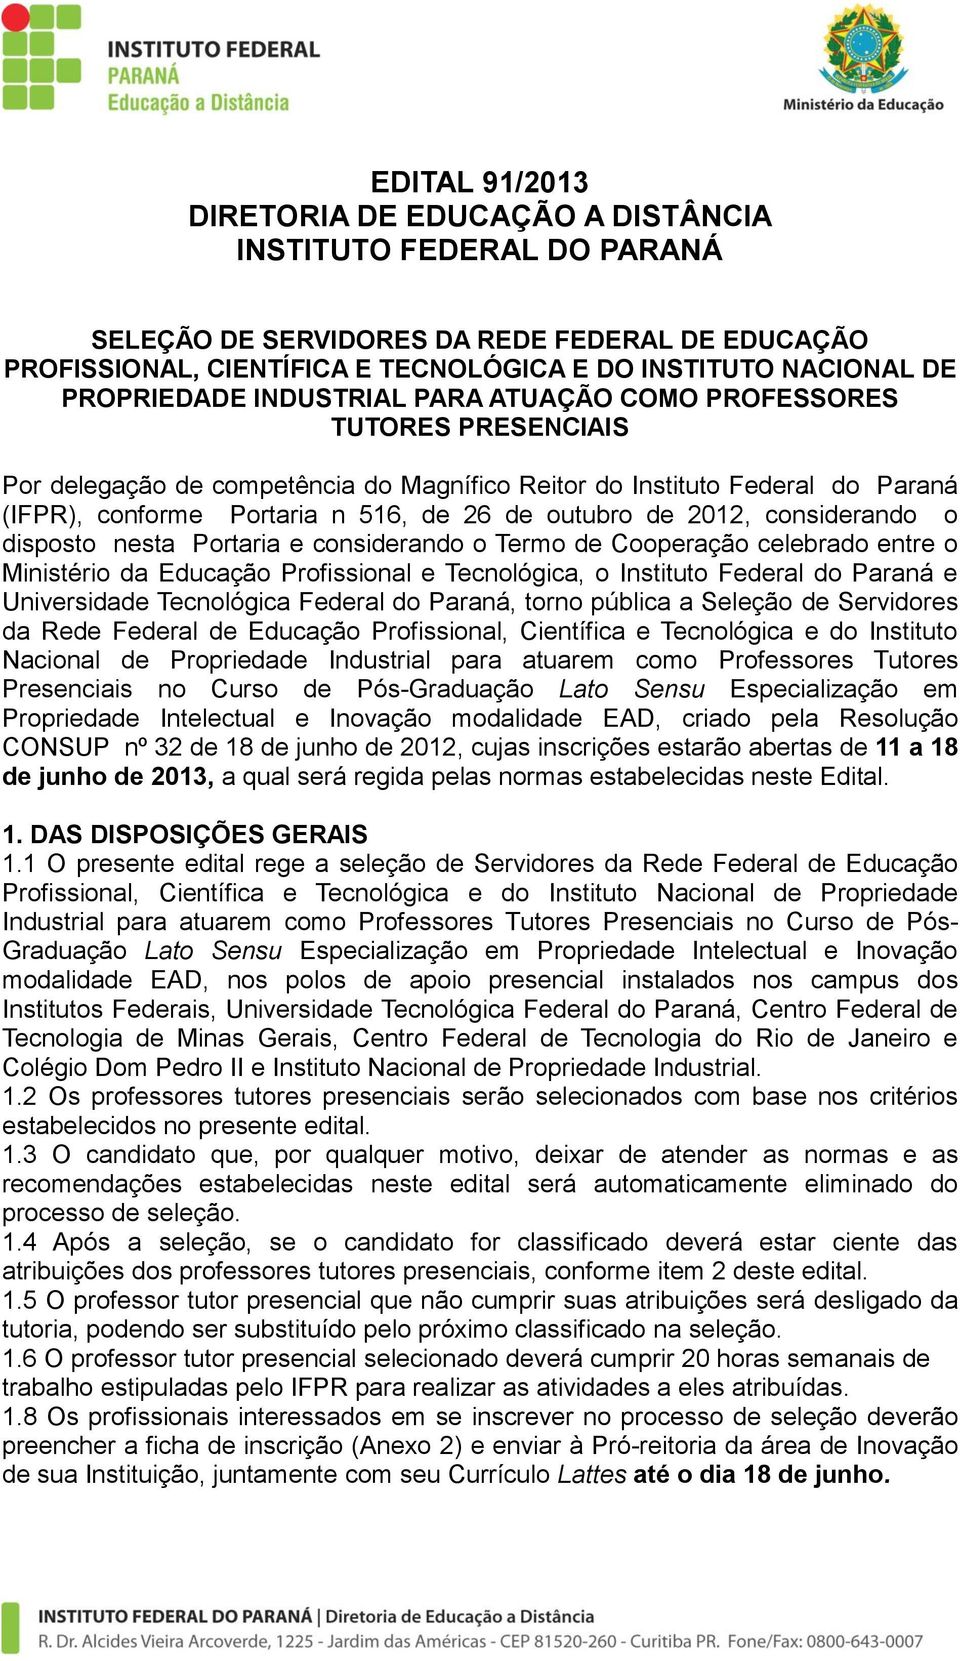 outubro de 2012, considerando o disposto nesta Portaria e considerando o Termo de Cooperação celebrado entre o Ministério da Educação Profissional e Tecnológica, o Instituto Federal do Paraná e